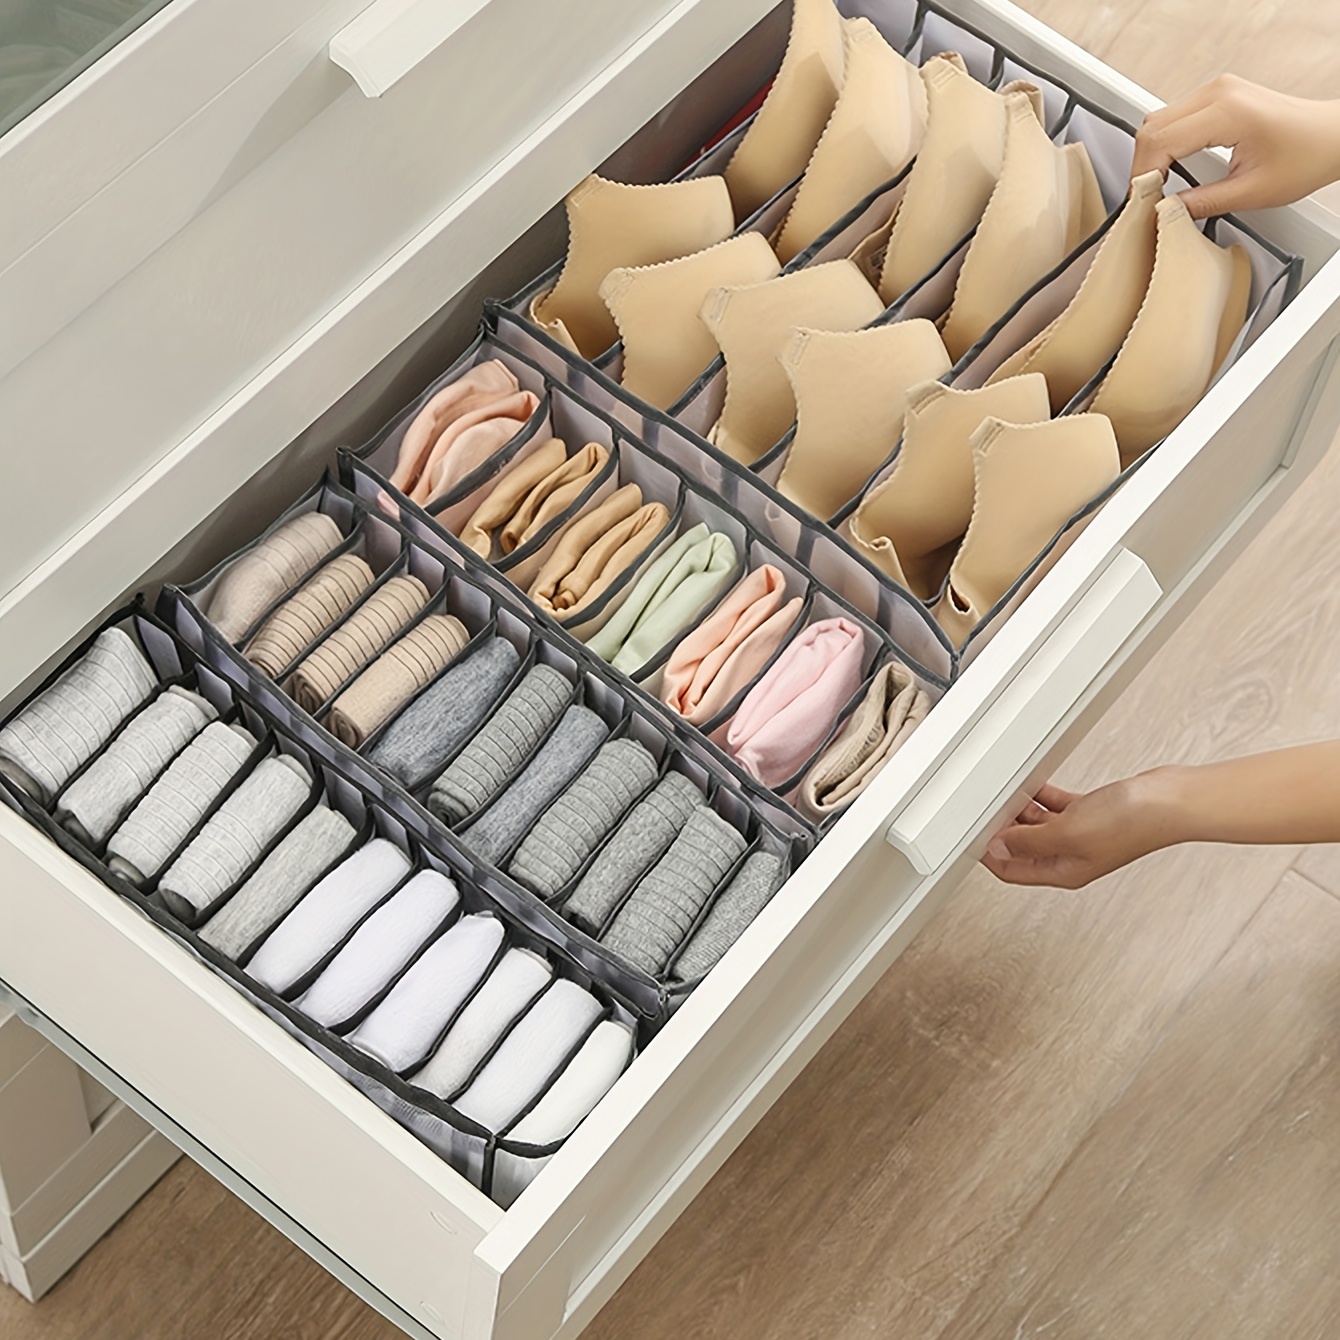 Caja de almacenamiento con compartimentos para ropa interior y calcetines -  Clikoutlet